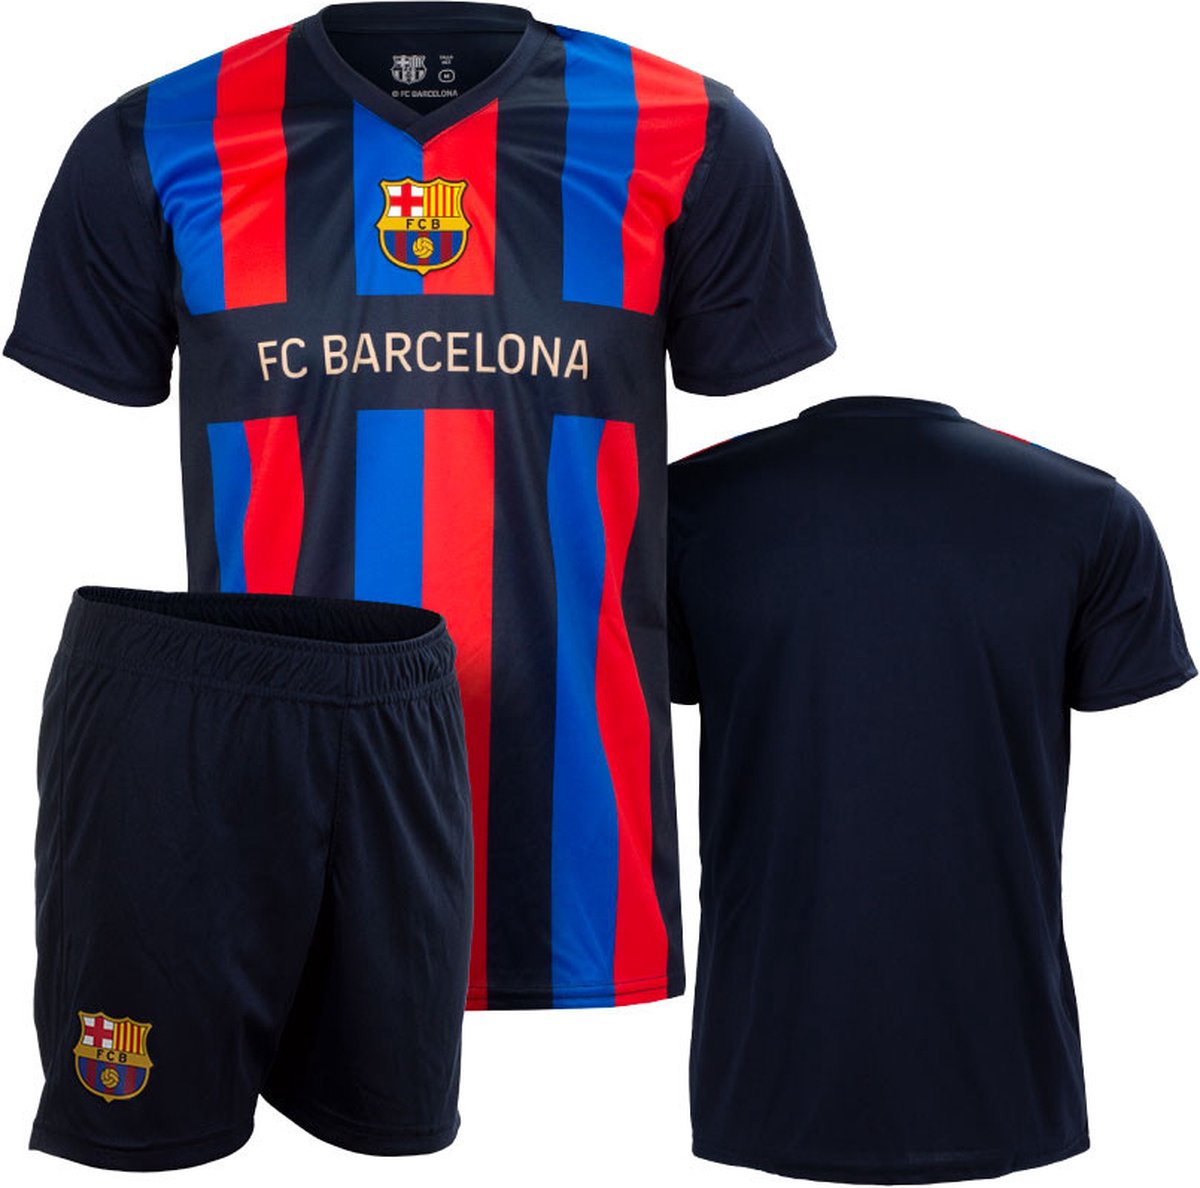 FC Barcelona thuis tenue kinderen - 8 jaar (128)